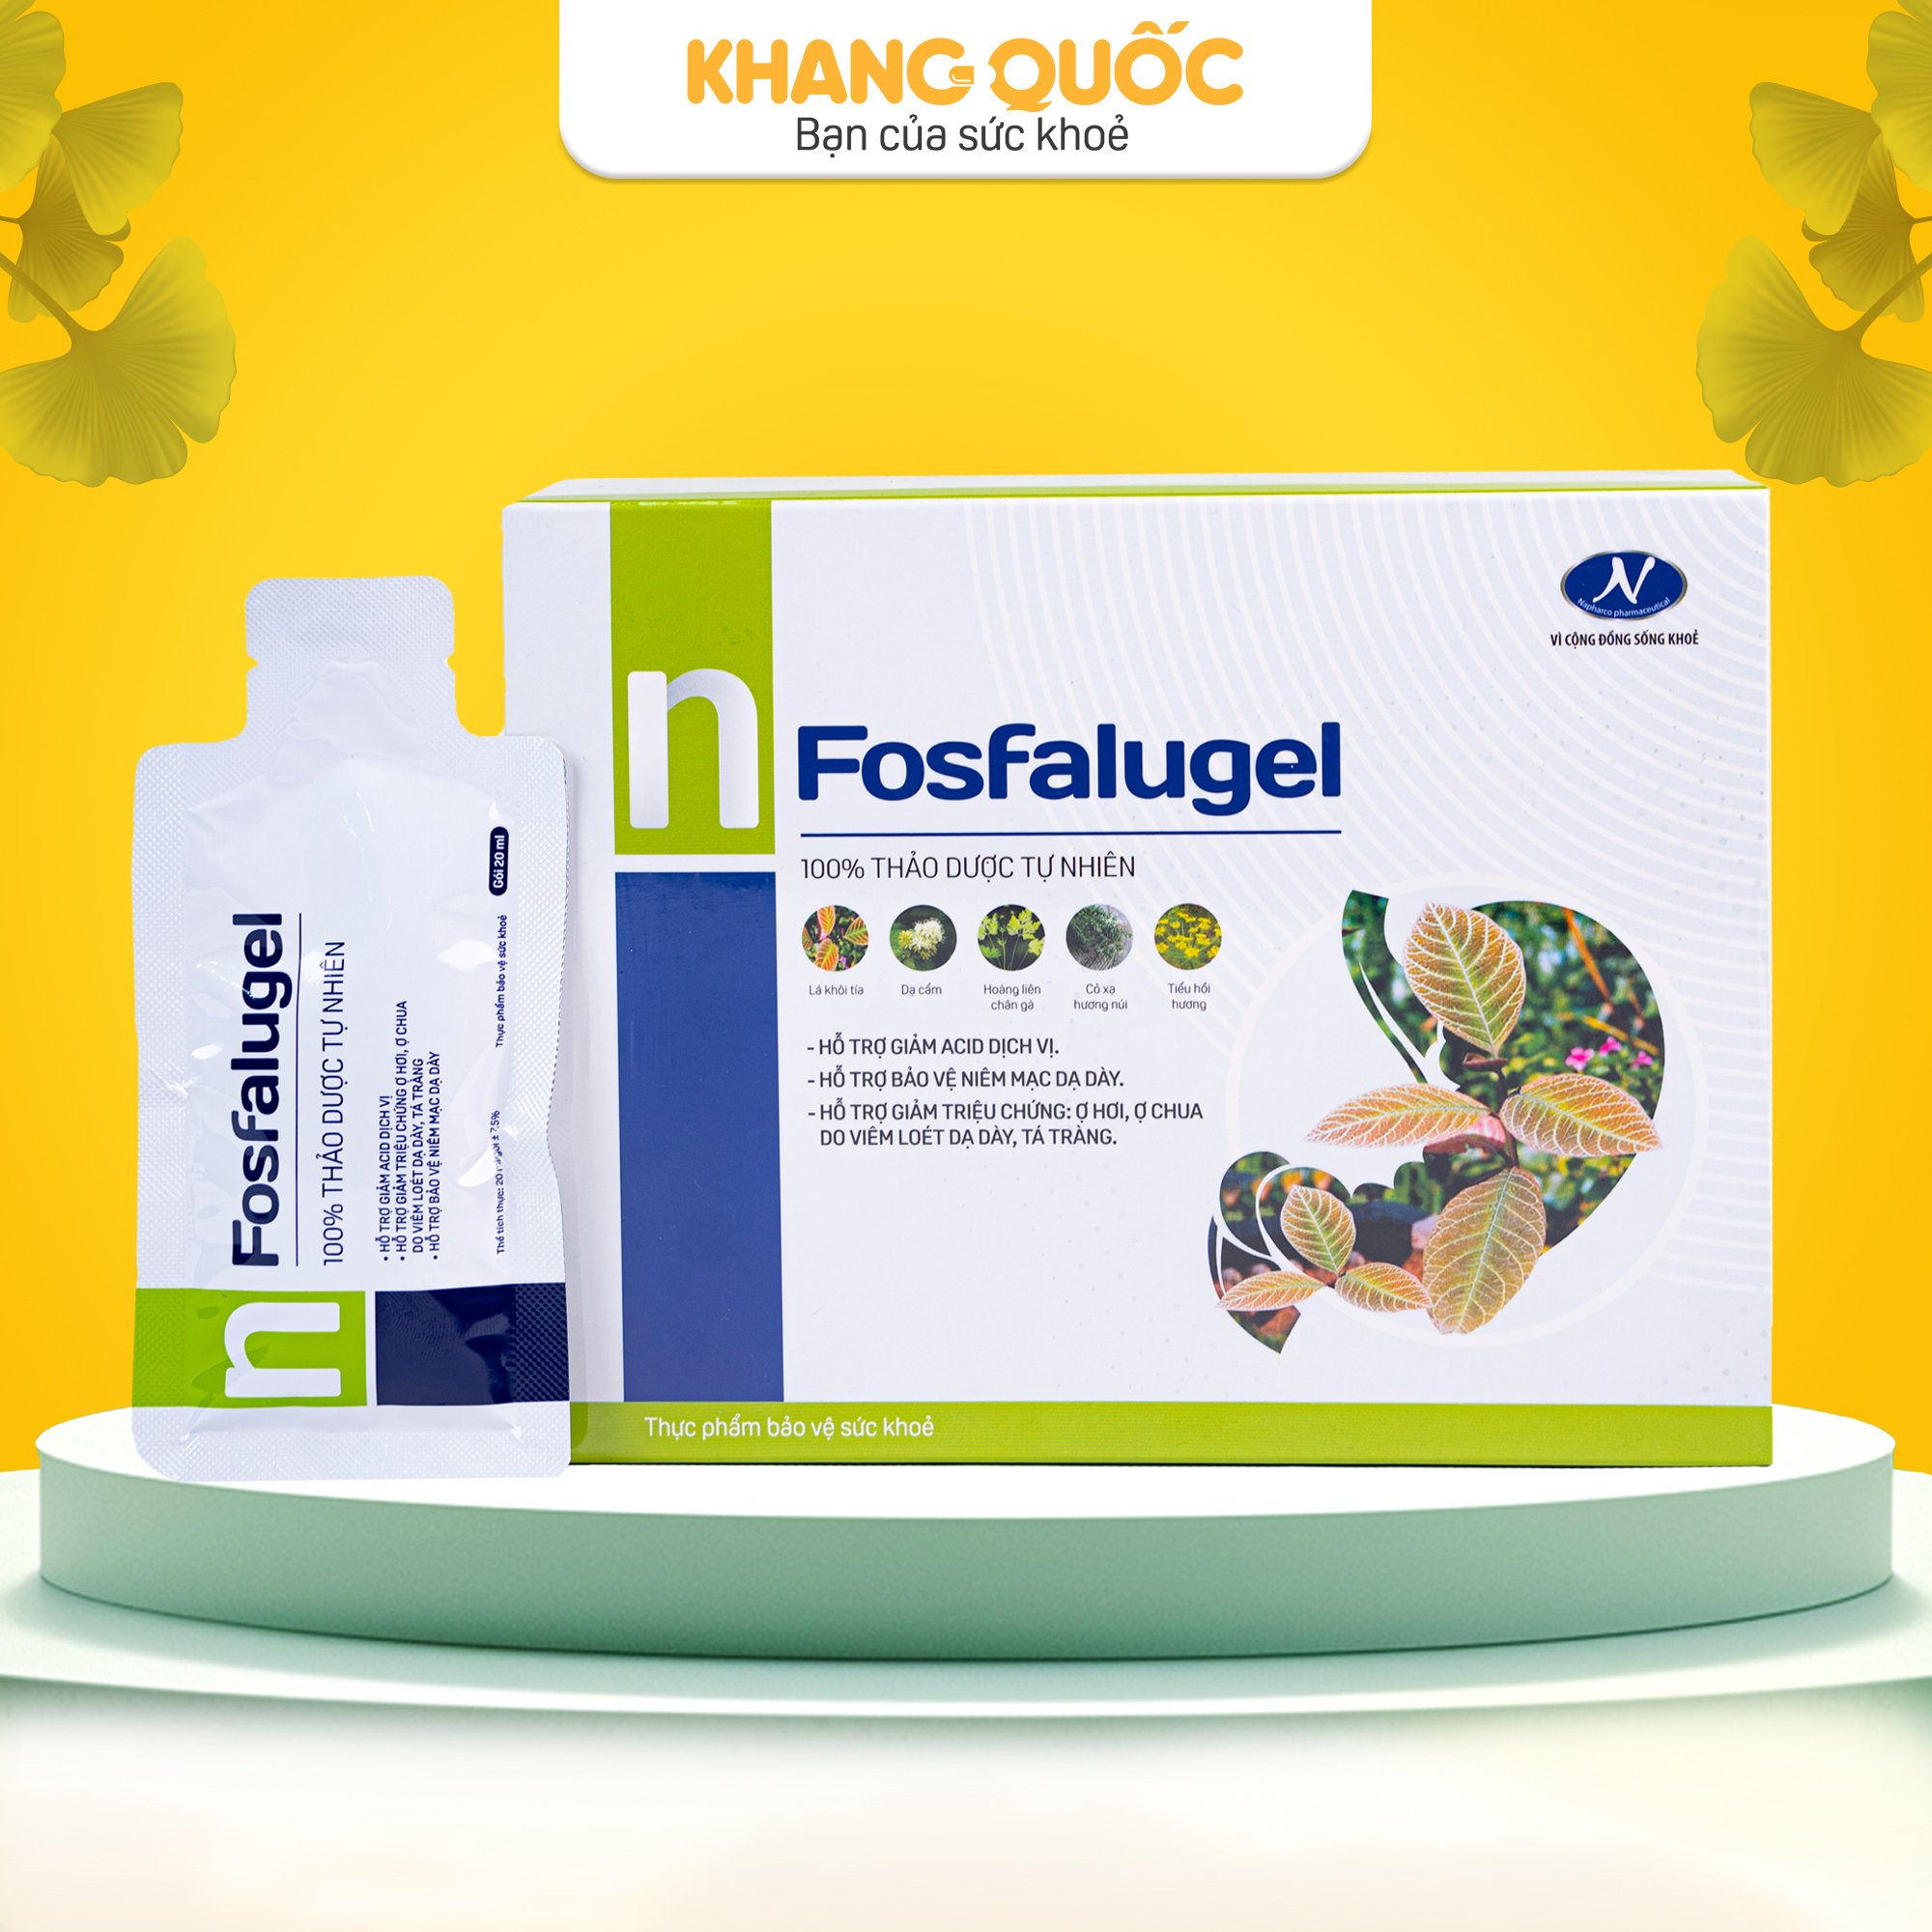 Fosfalugel giúp làm giảm các triệu chứng đau dạ dày